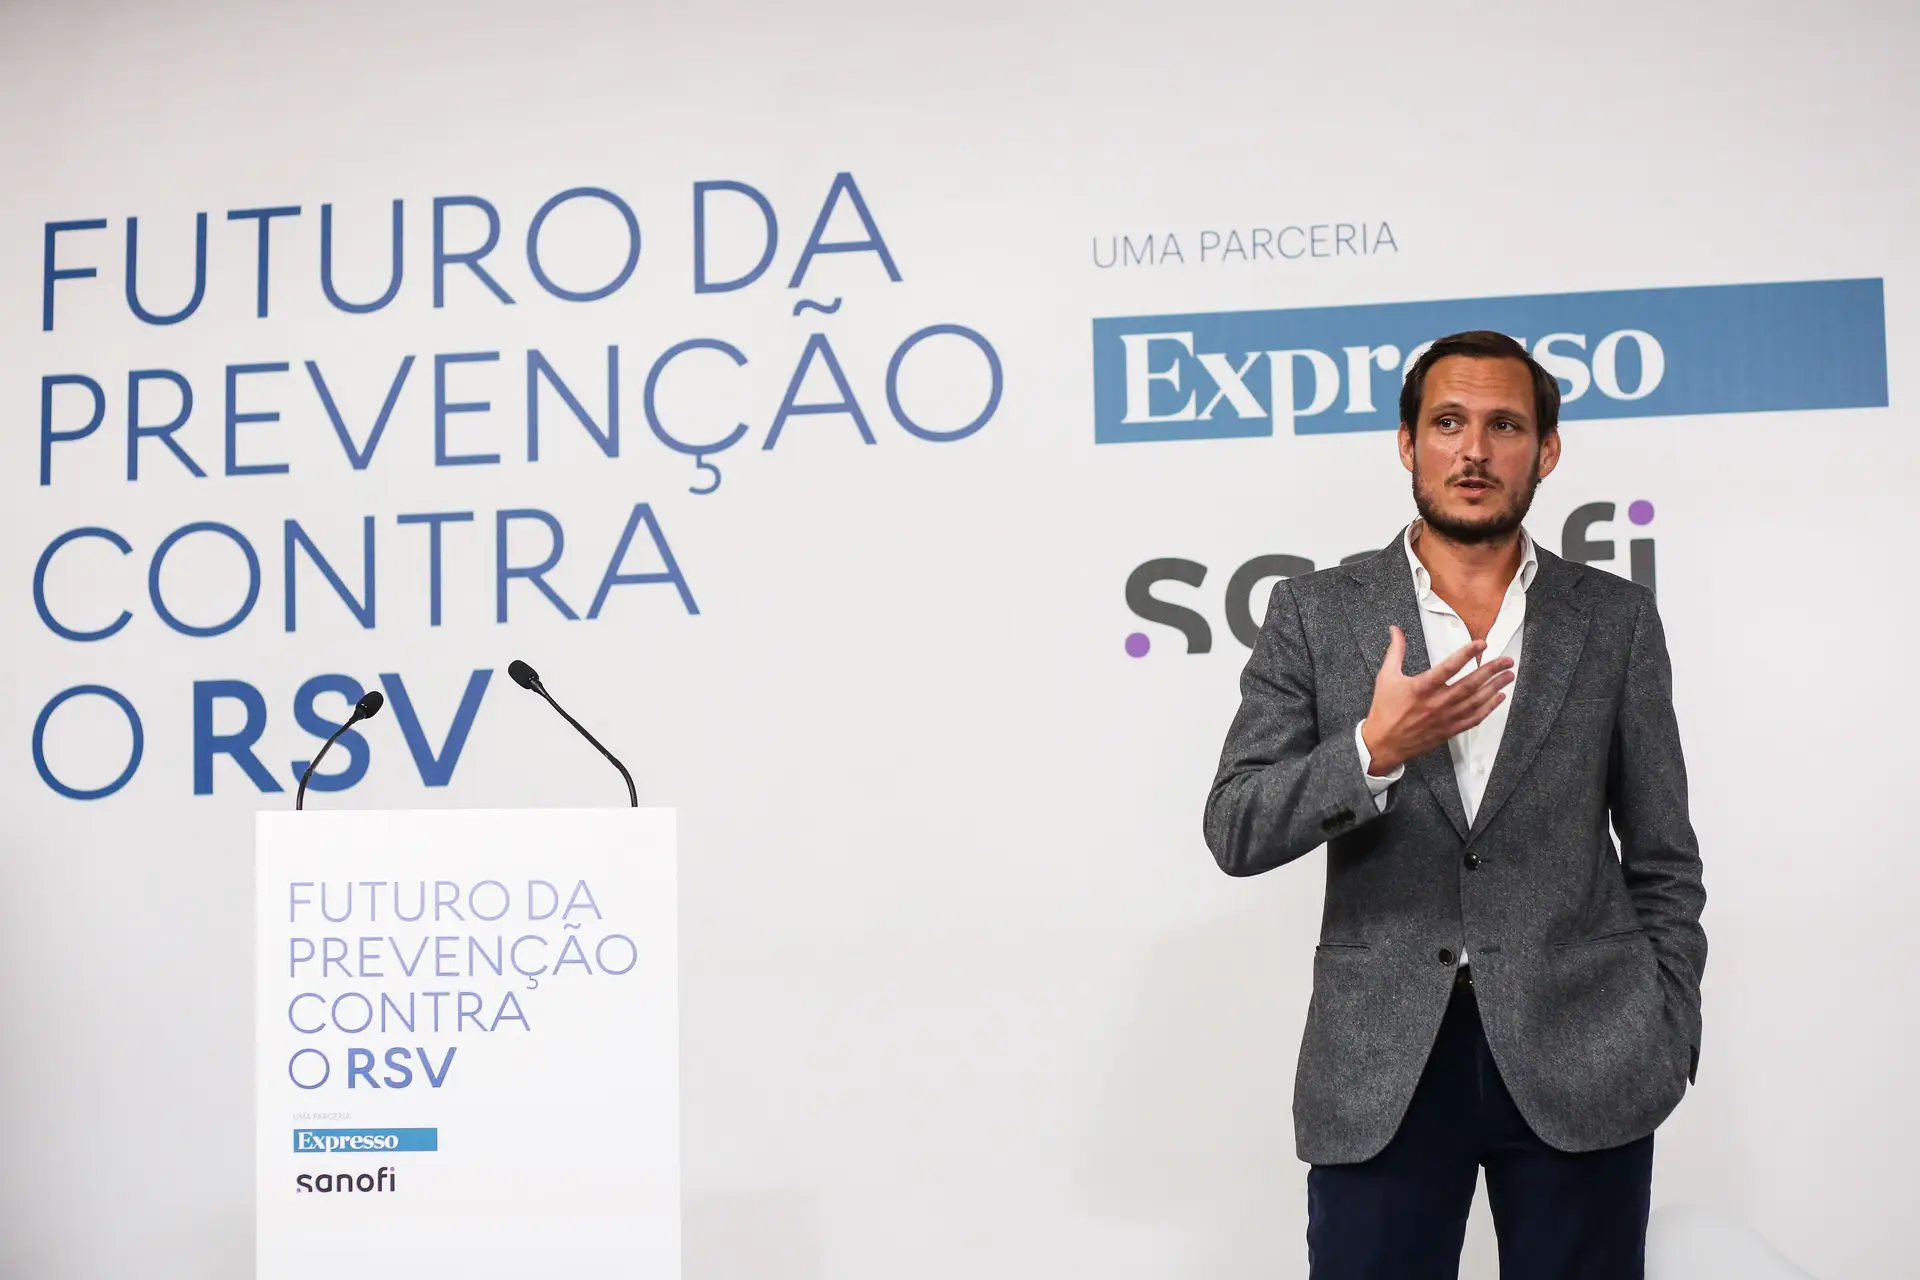 Francisco Pedro Balsemão abriu a conferência “Futuro da prevenção contra o RSV”...